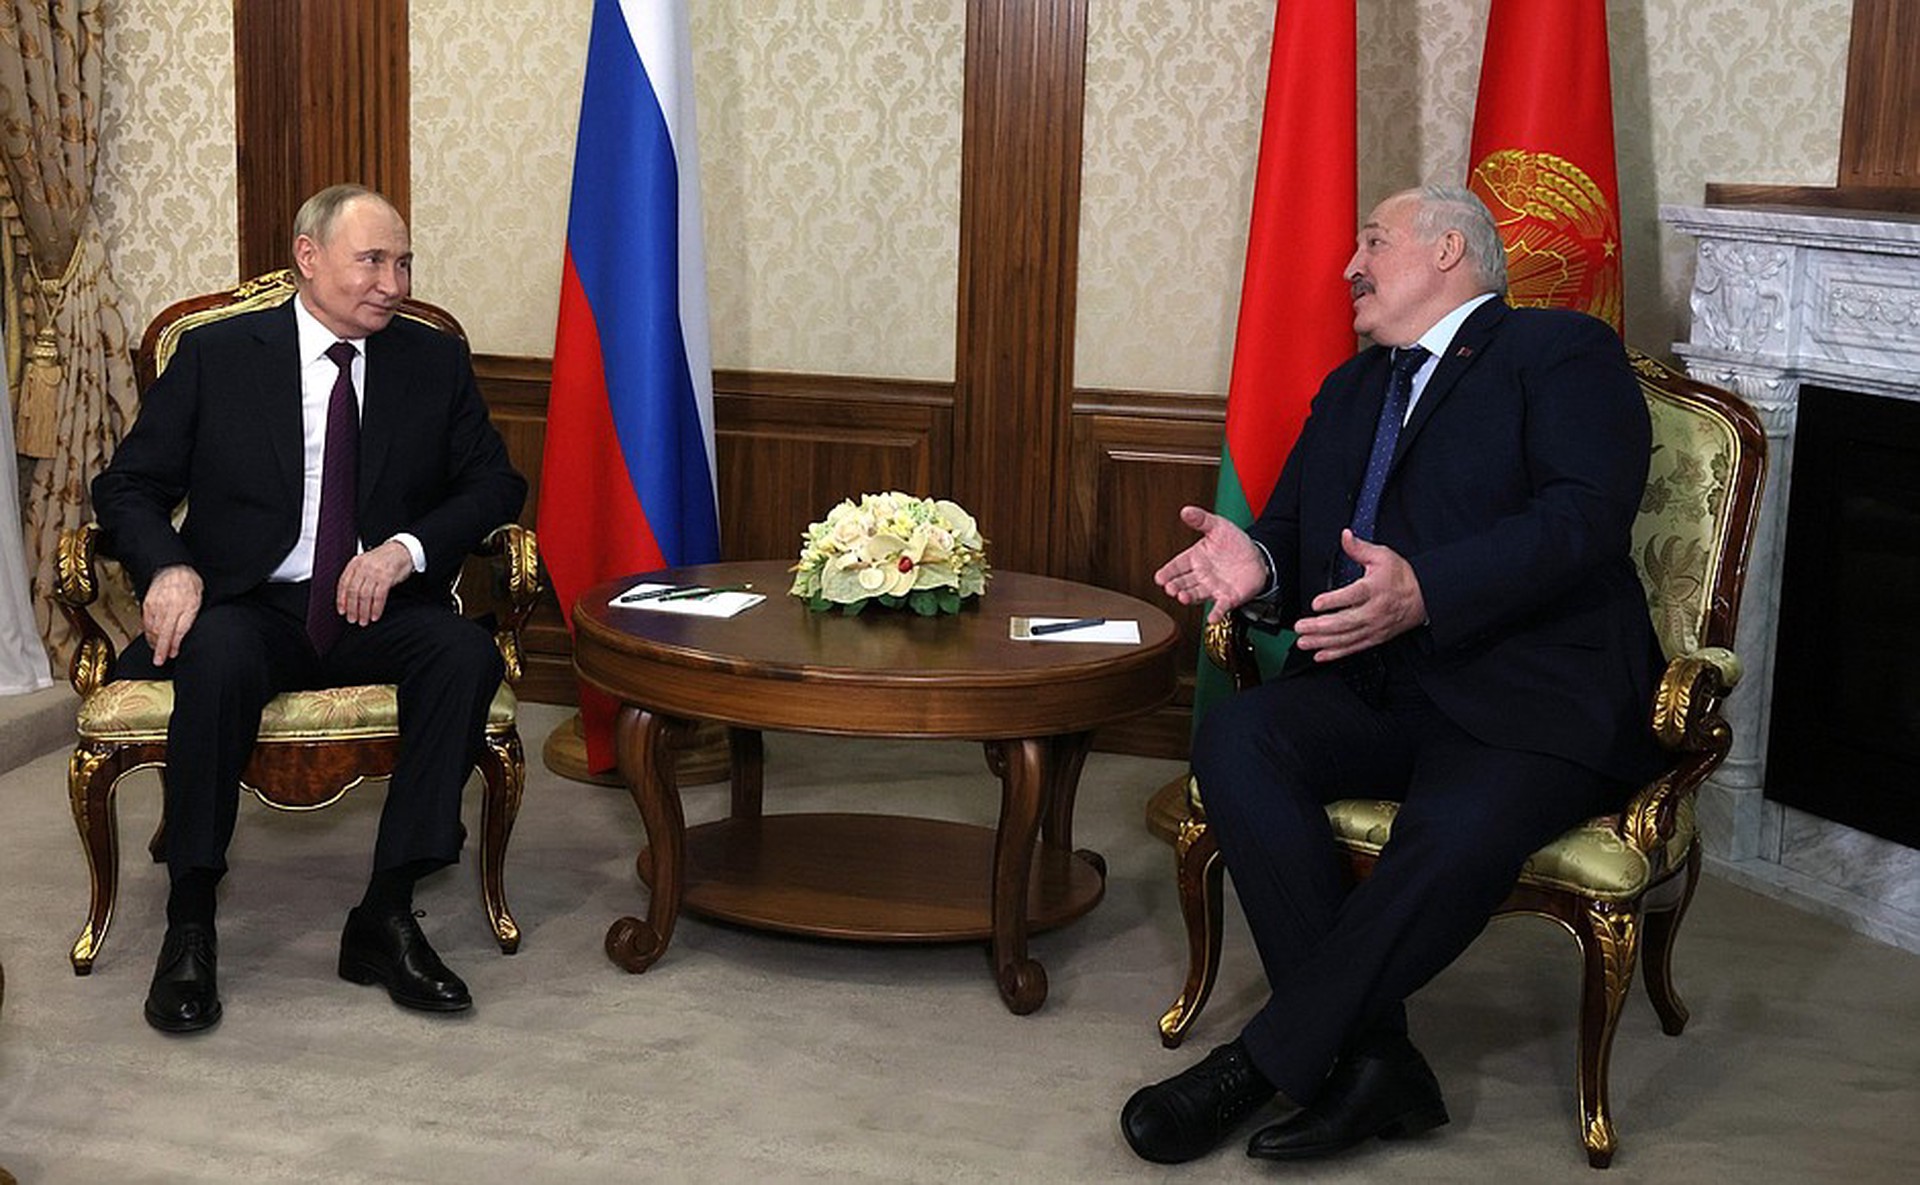 Путин: Нерешённых вопросов в отношениях России и Белоруссии нет 